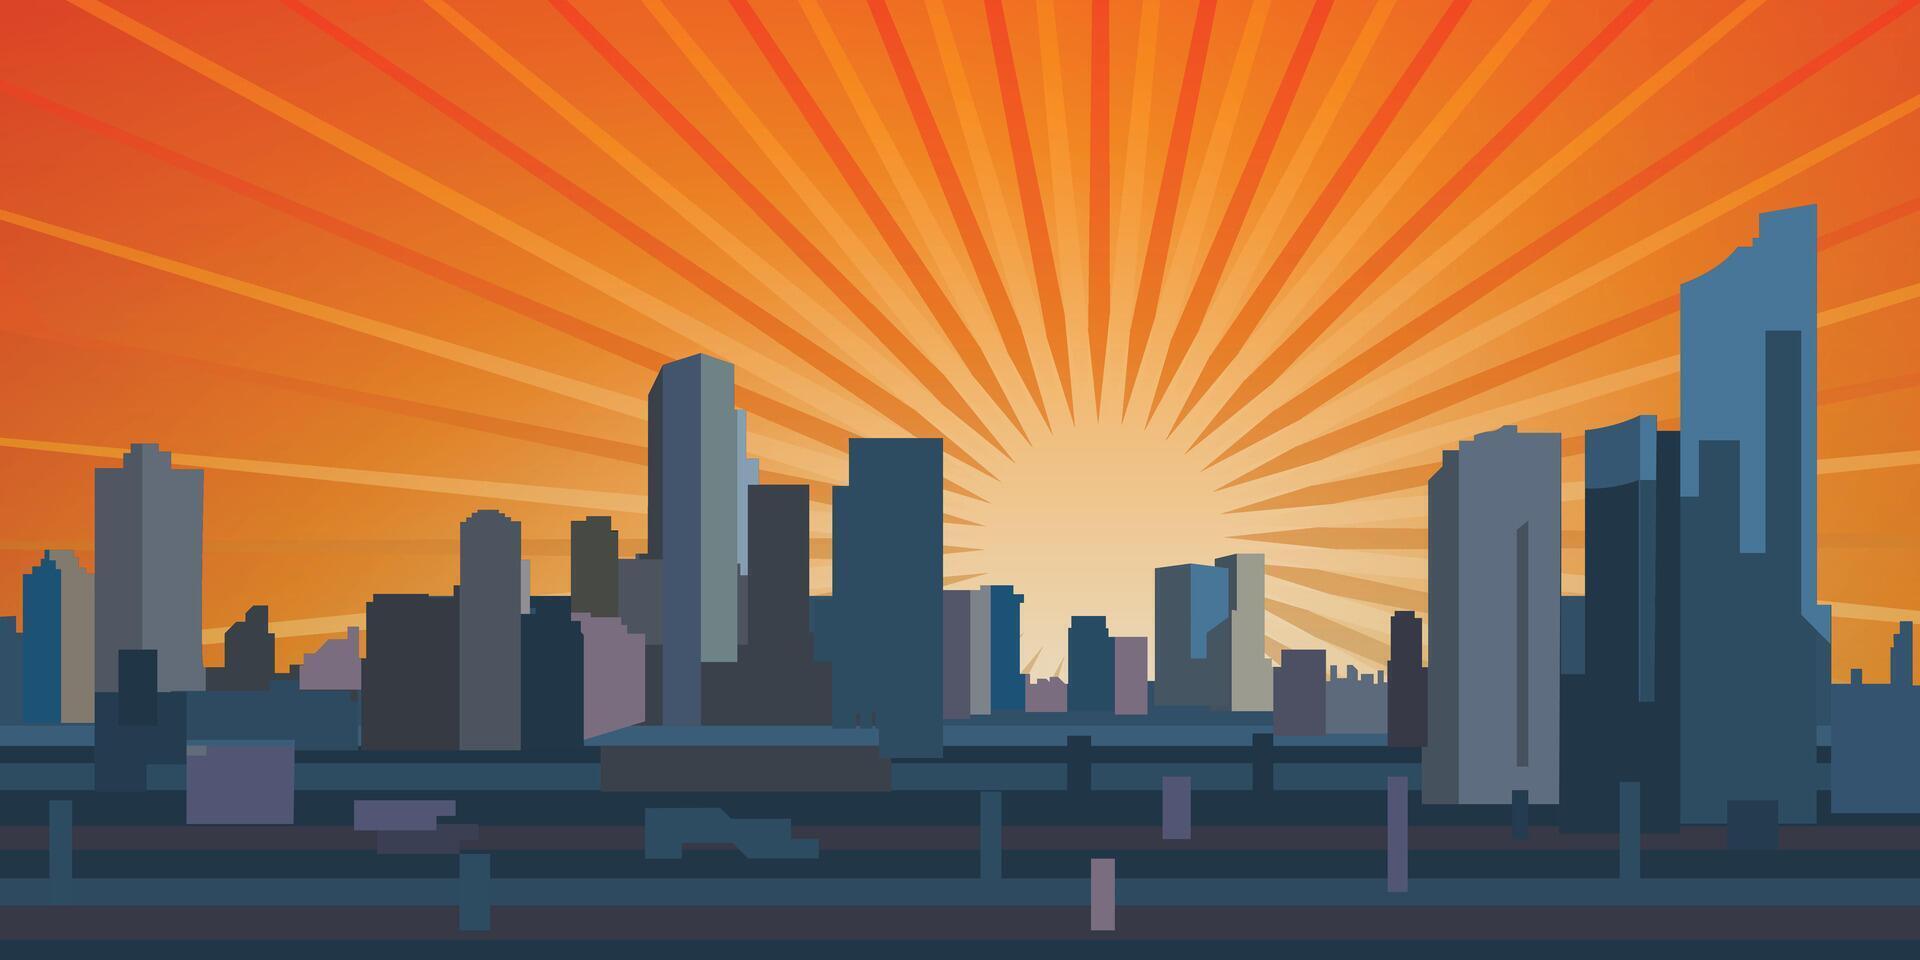 Jakarta skyline sunburst vector illustration.